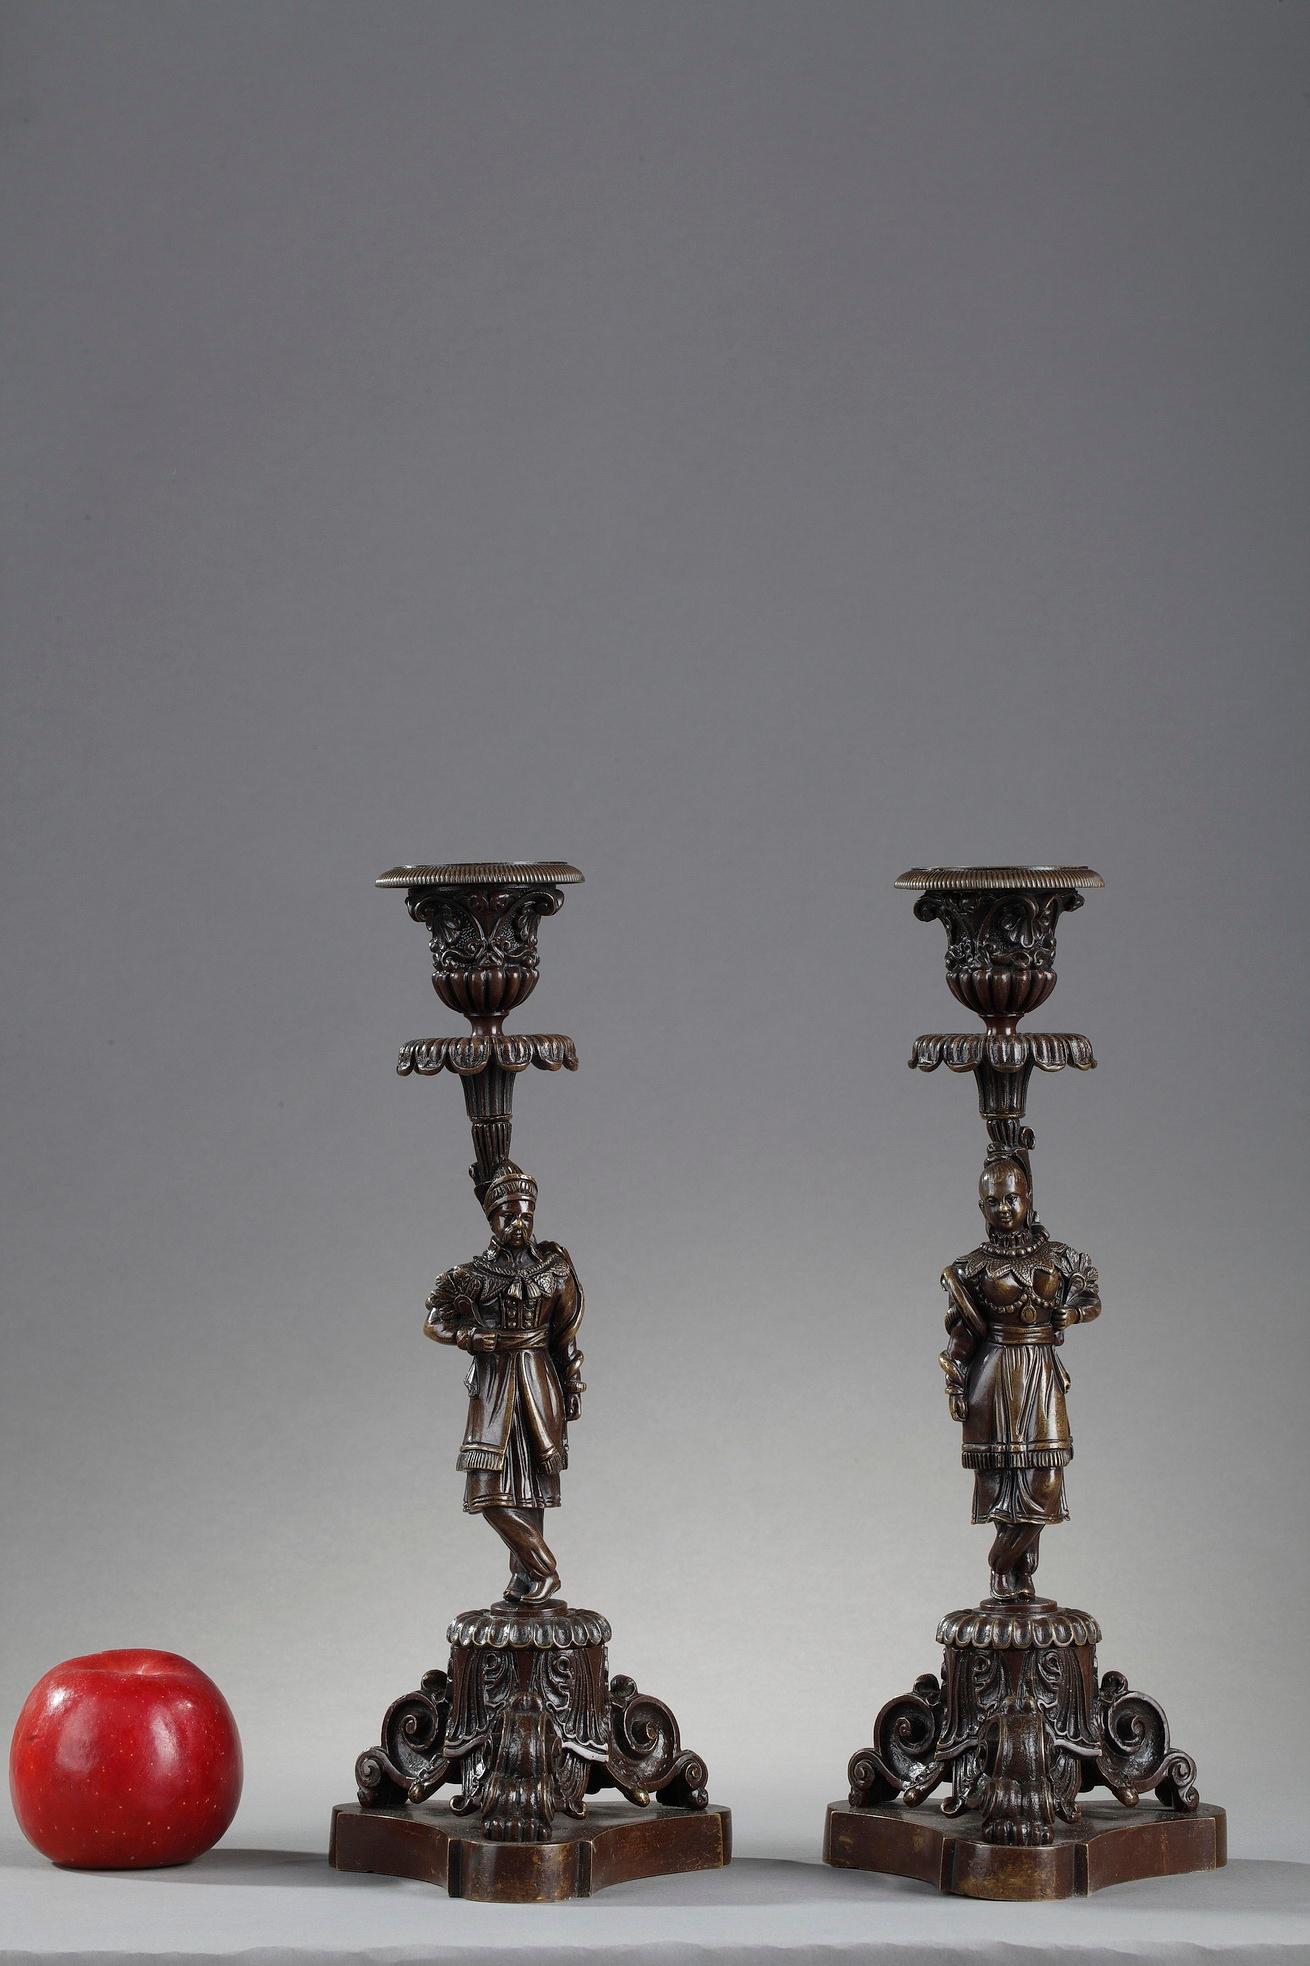 Kerzenhalter aus patinierter Bronze vom Ende des 19. Jahrhunderts, der Stiel mit chinesischen Motiven verziert. Der Mann und die Frau, elegant gekleidet, ruhen auf einem dreibeinigen Sockel. Der Sockel und die Tülle sind mit detaillierten Schnörkeln